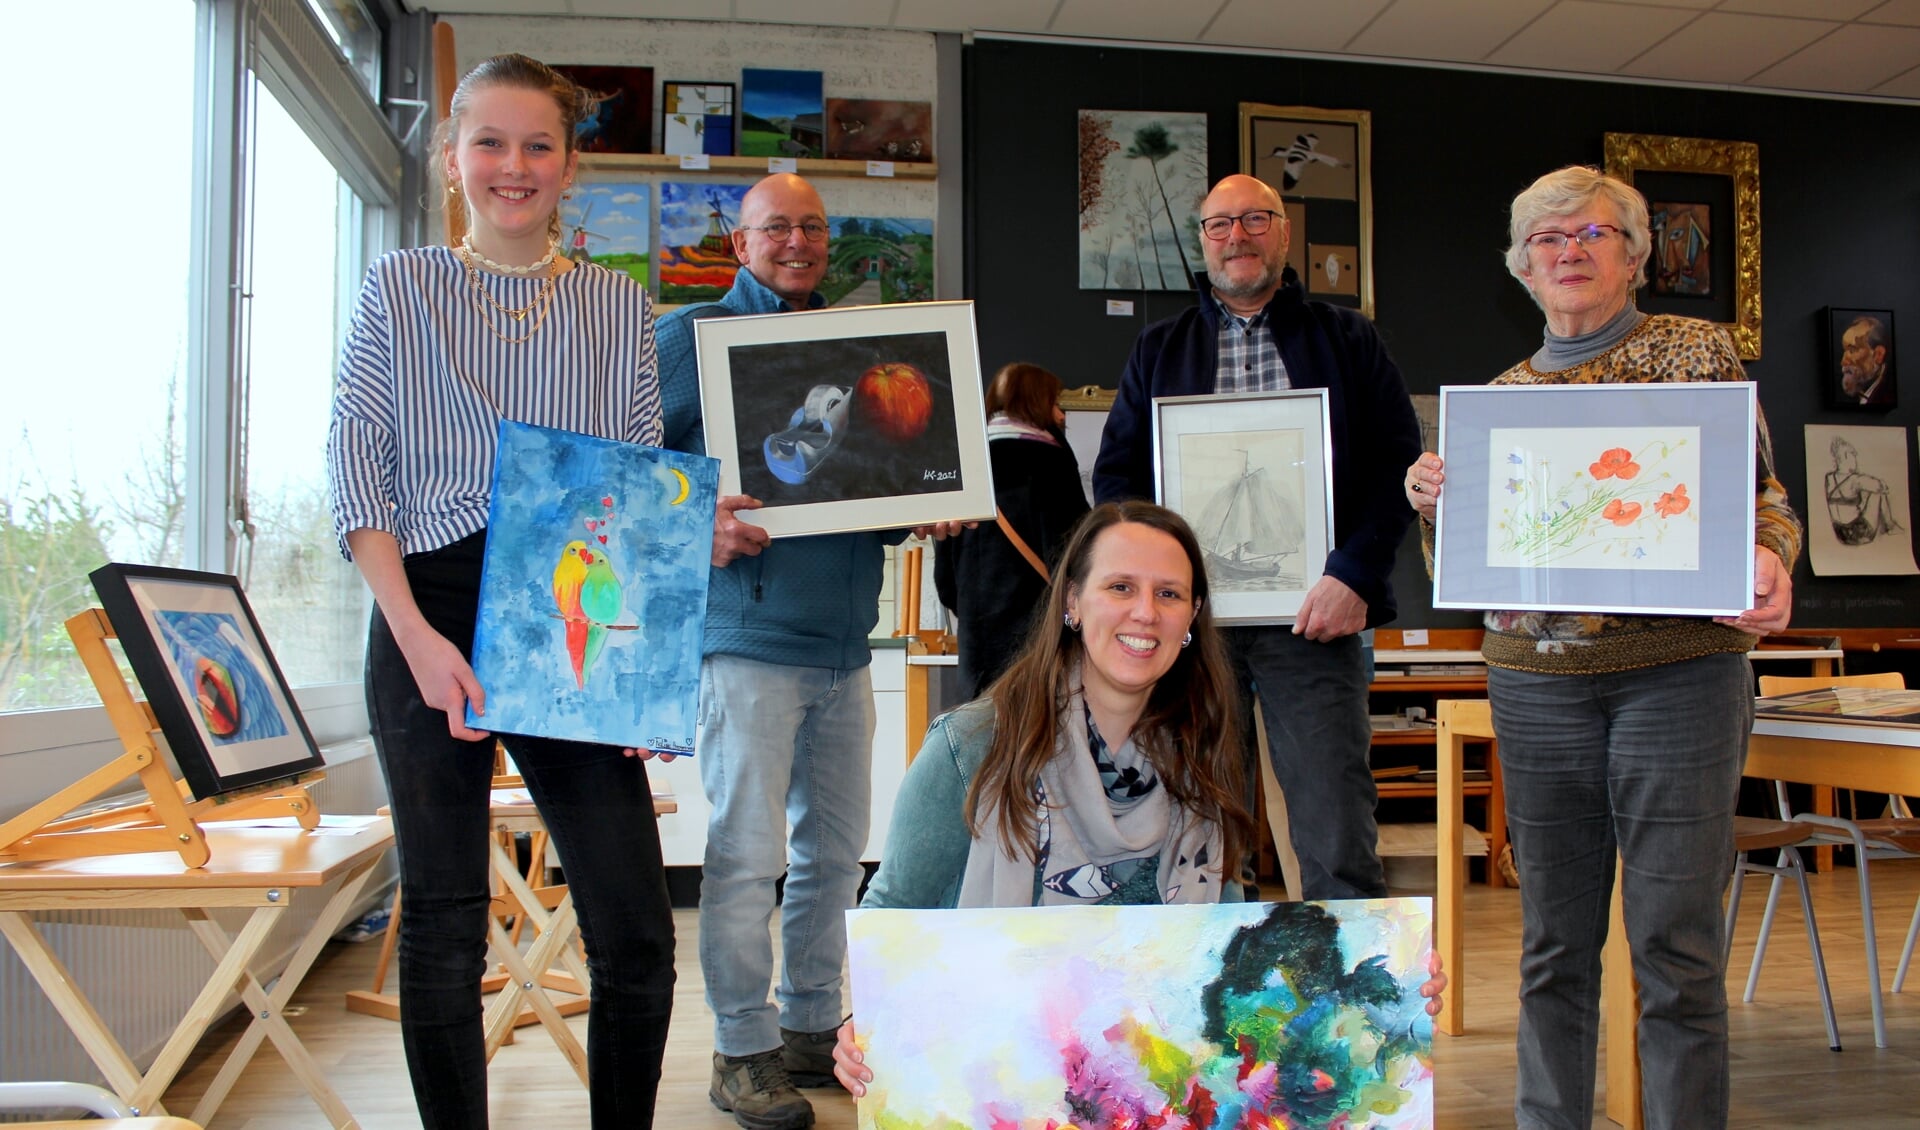 Deelnemers aan de kunstexpositie van Creatief Rijnwoude tonen hun werk: vlnr Feline Hoogervorst, Hans Kromhout, Anja Olijhoek, Simon Kralt en Nel Rijnsburg